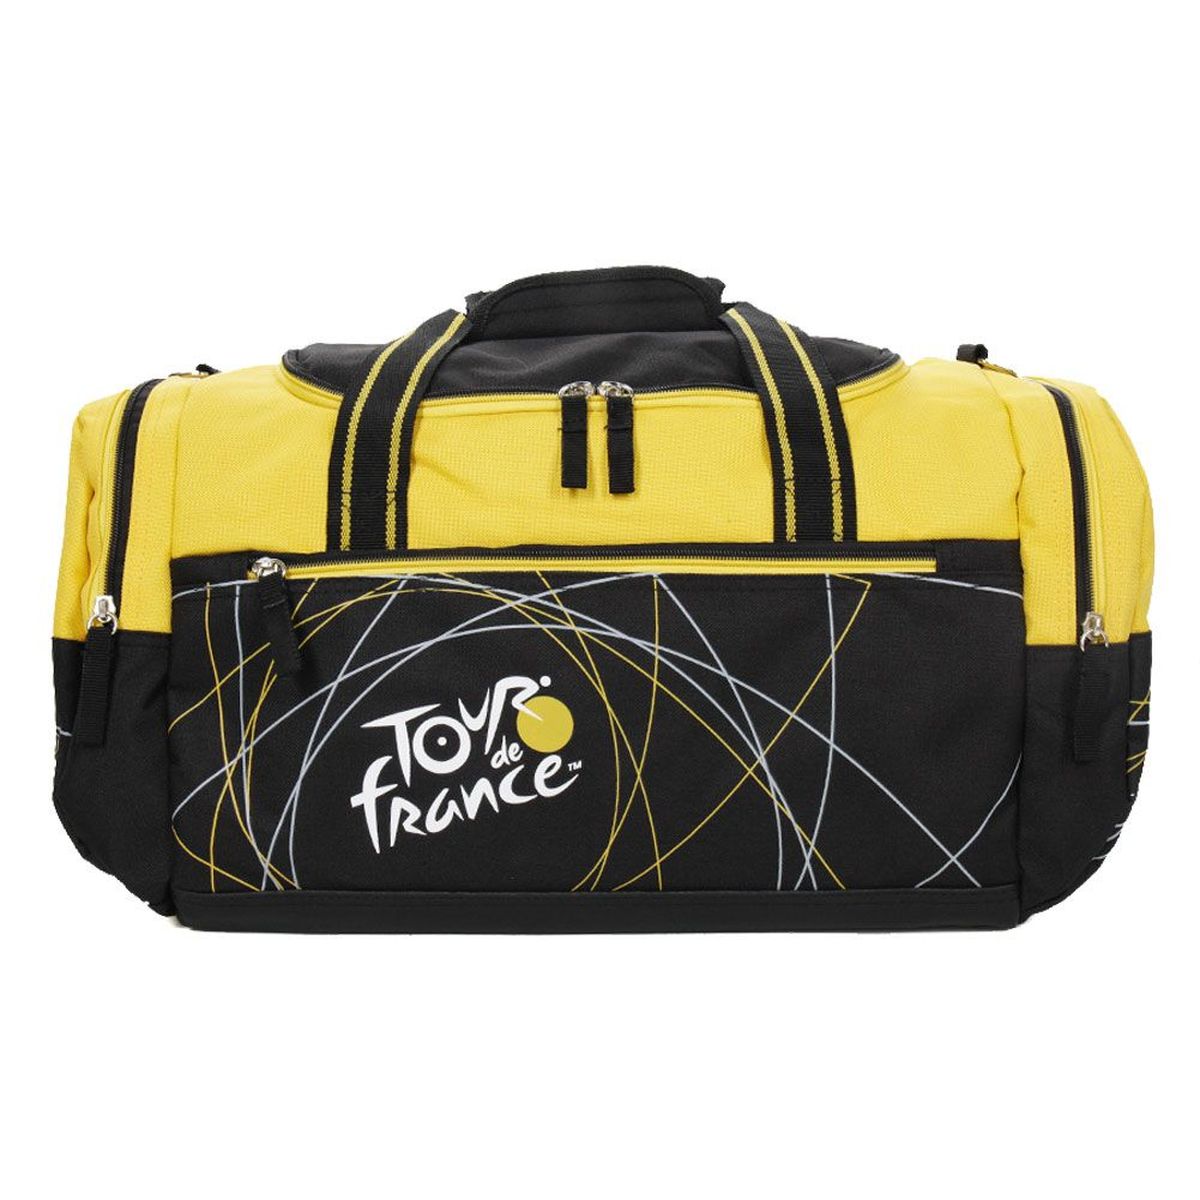 Tour de France Sport Bag